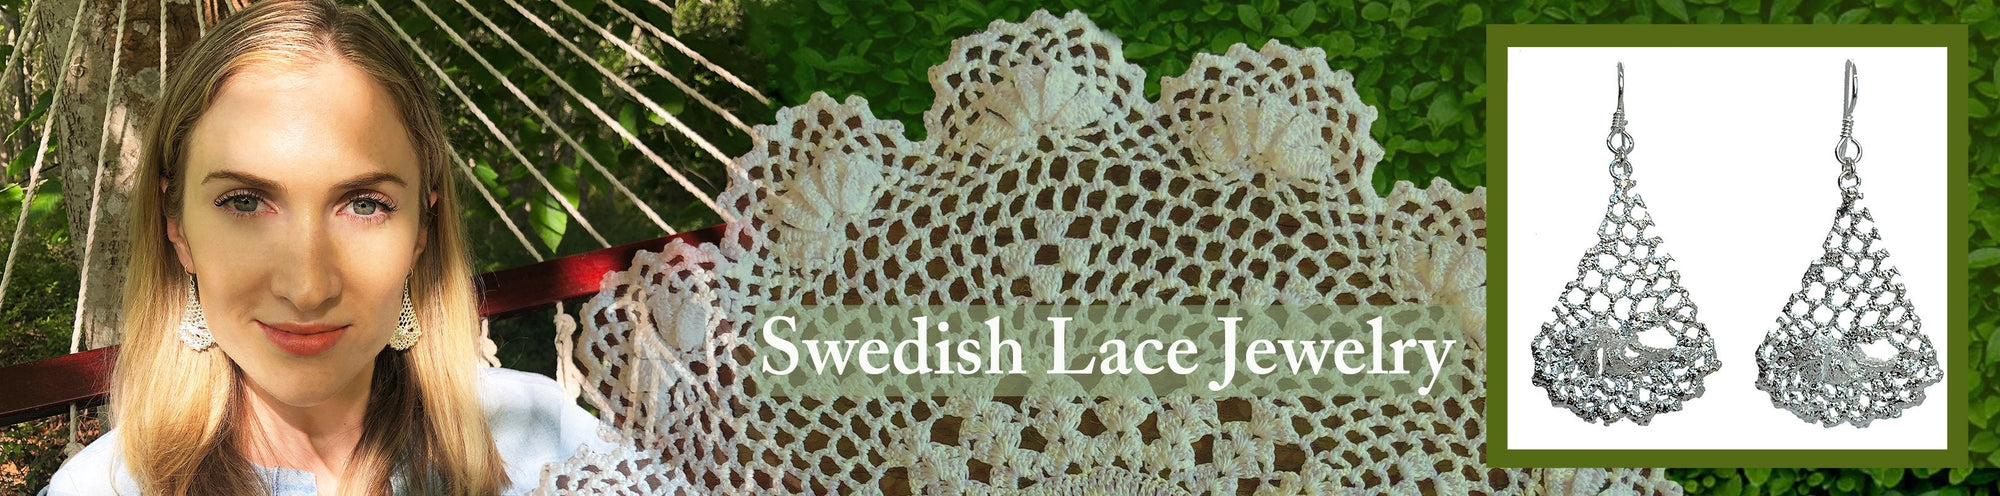 Swedish Lace Jewelry